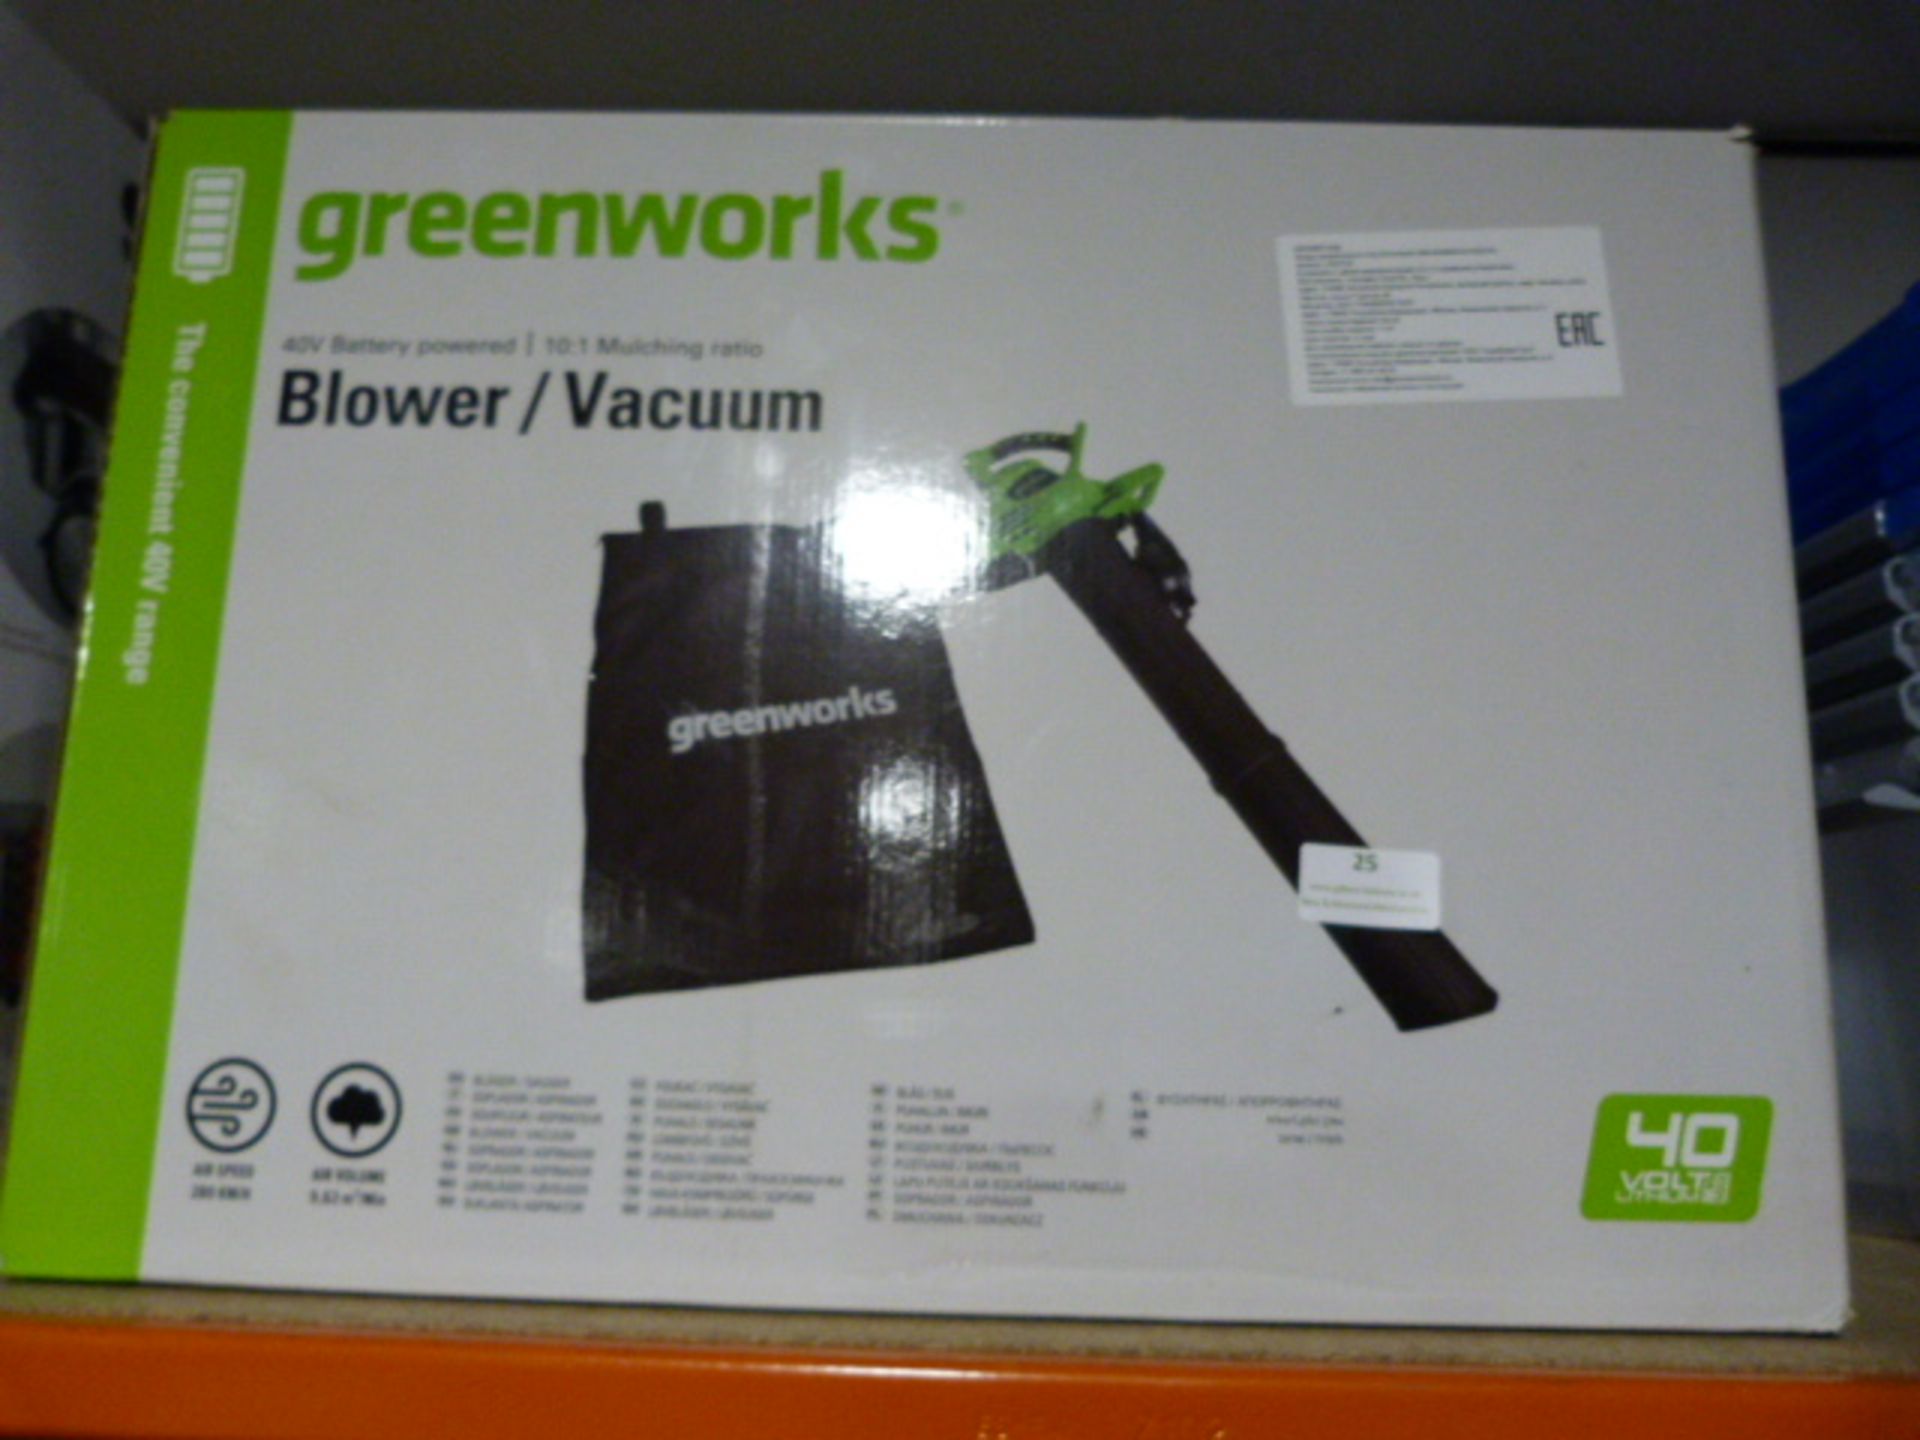 *Greenworks Blower/Vacuum